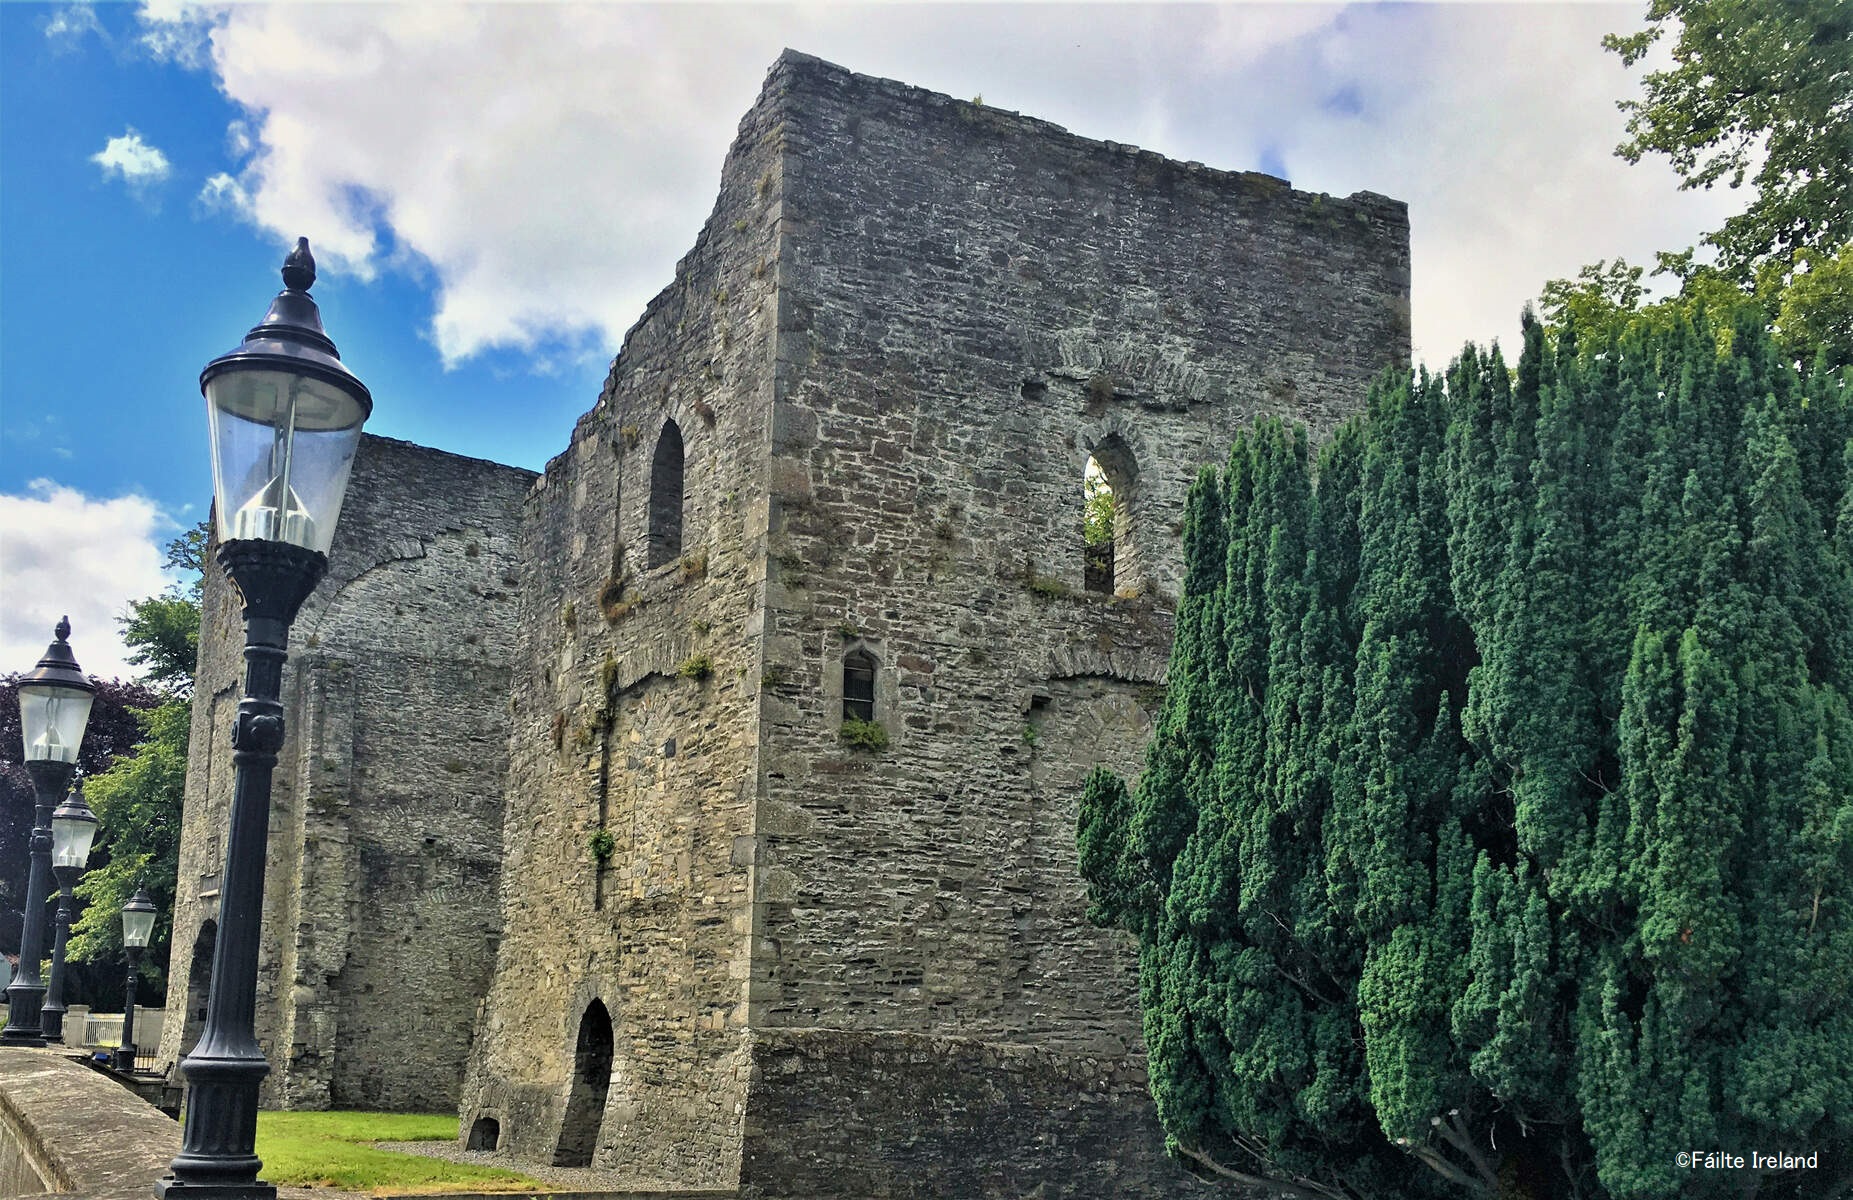 アイルランド大使館 Ireland In Japan Auf Twitter アイルランドお城巡り 13世紀初期に建てられた石造りのメイヌース城 は かつてキルデア伯フィッツジェラルド家の権力の象徴でした 8代目のギャレットは 1487年から1513年まで王としてアイルランドを統治